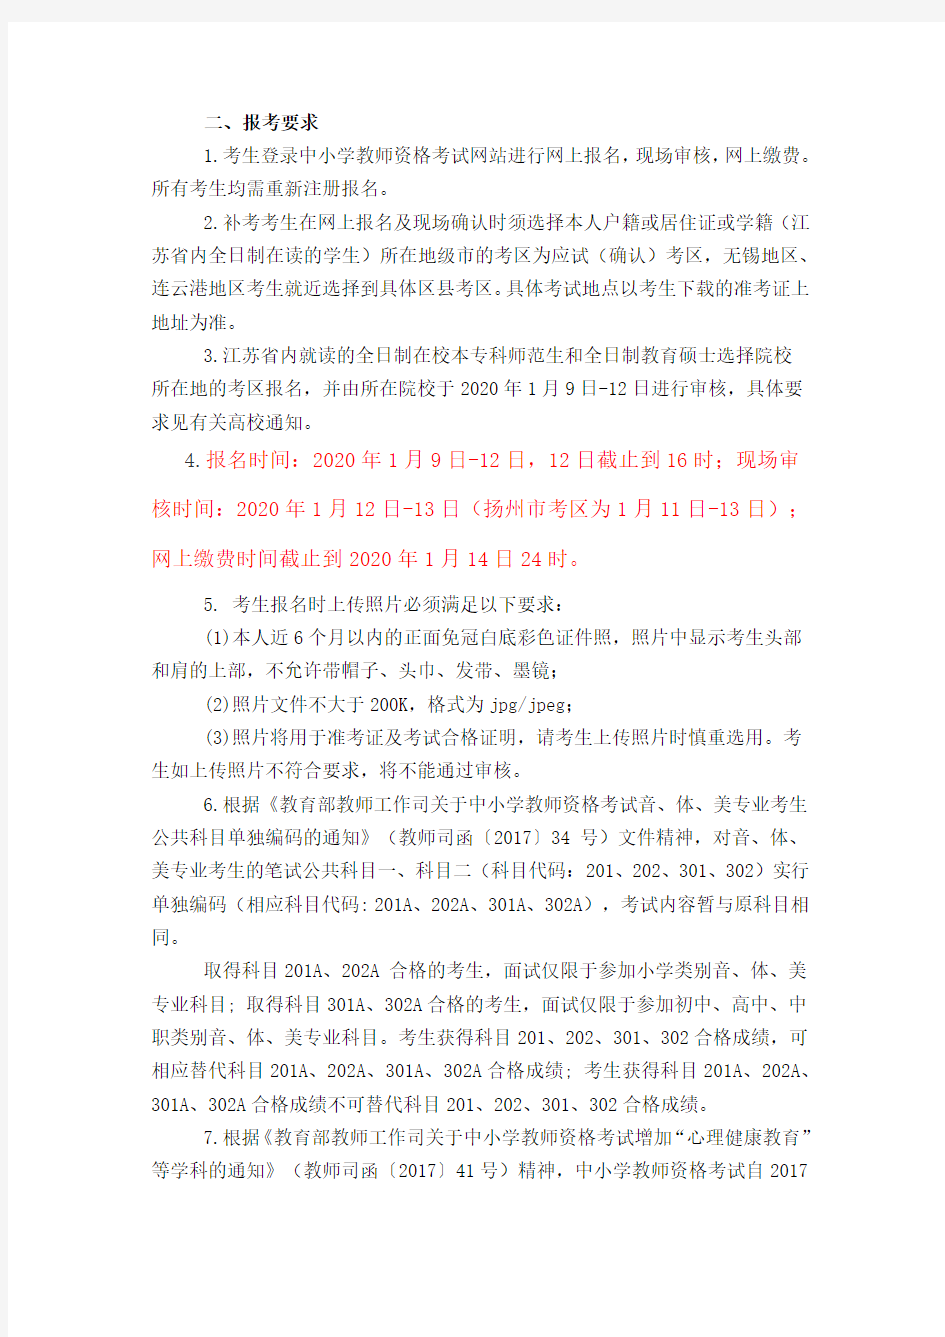 【江苏】2020年上半年江苏省全国教师资格证考试笔试公告